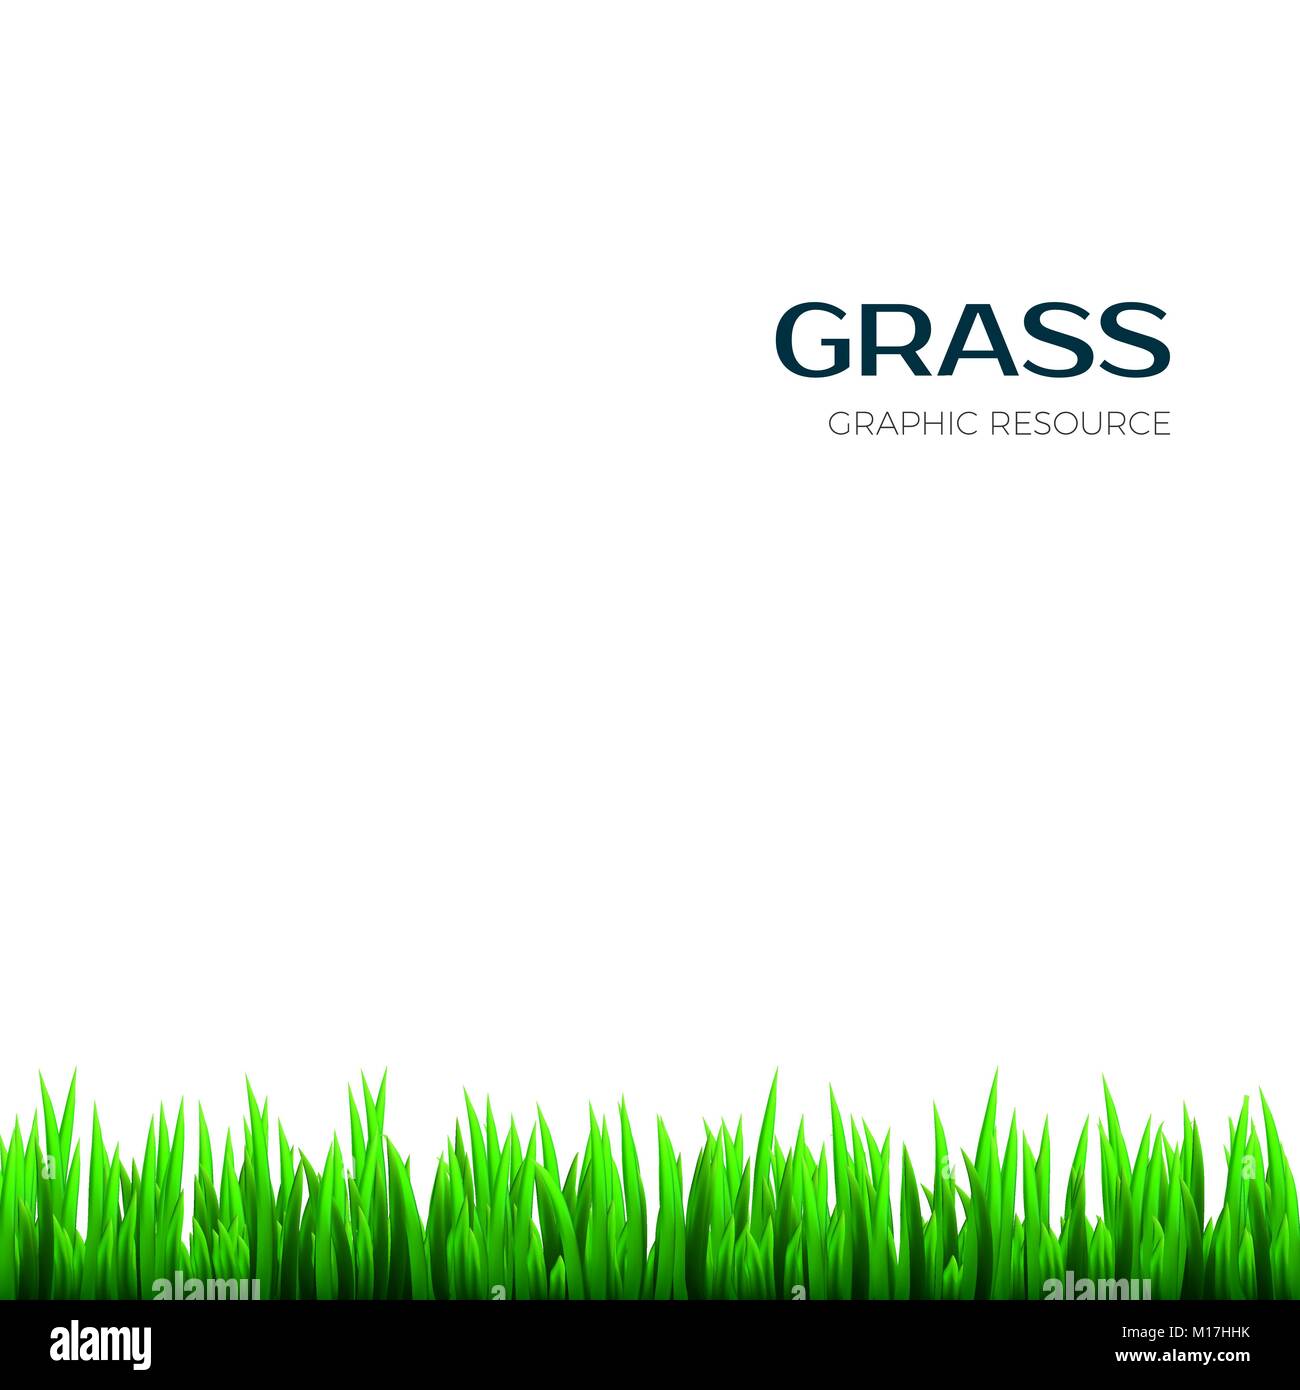 Grass Textur. Realistische horizontale Kraut Botanik Rahmen für Banner. Vector Illustration Stock Vektor